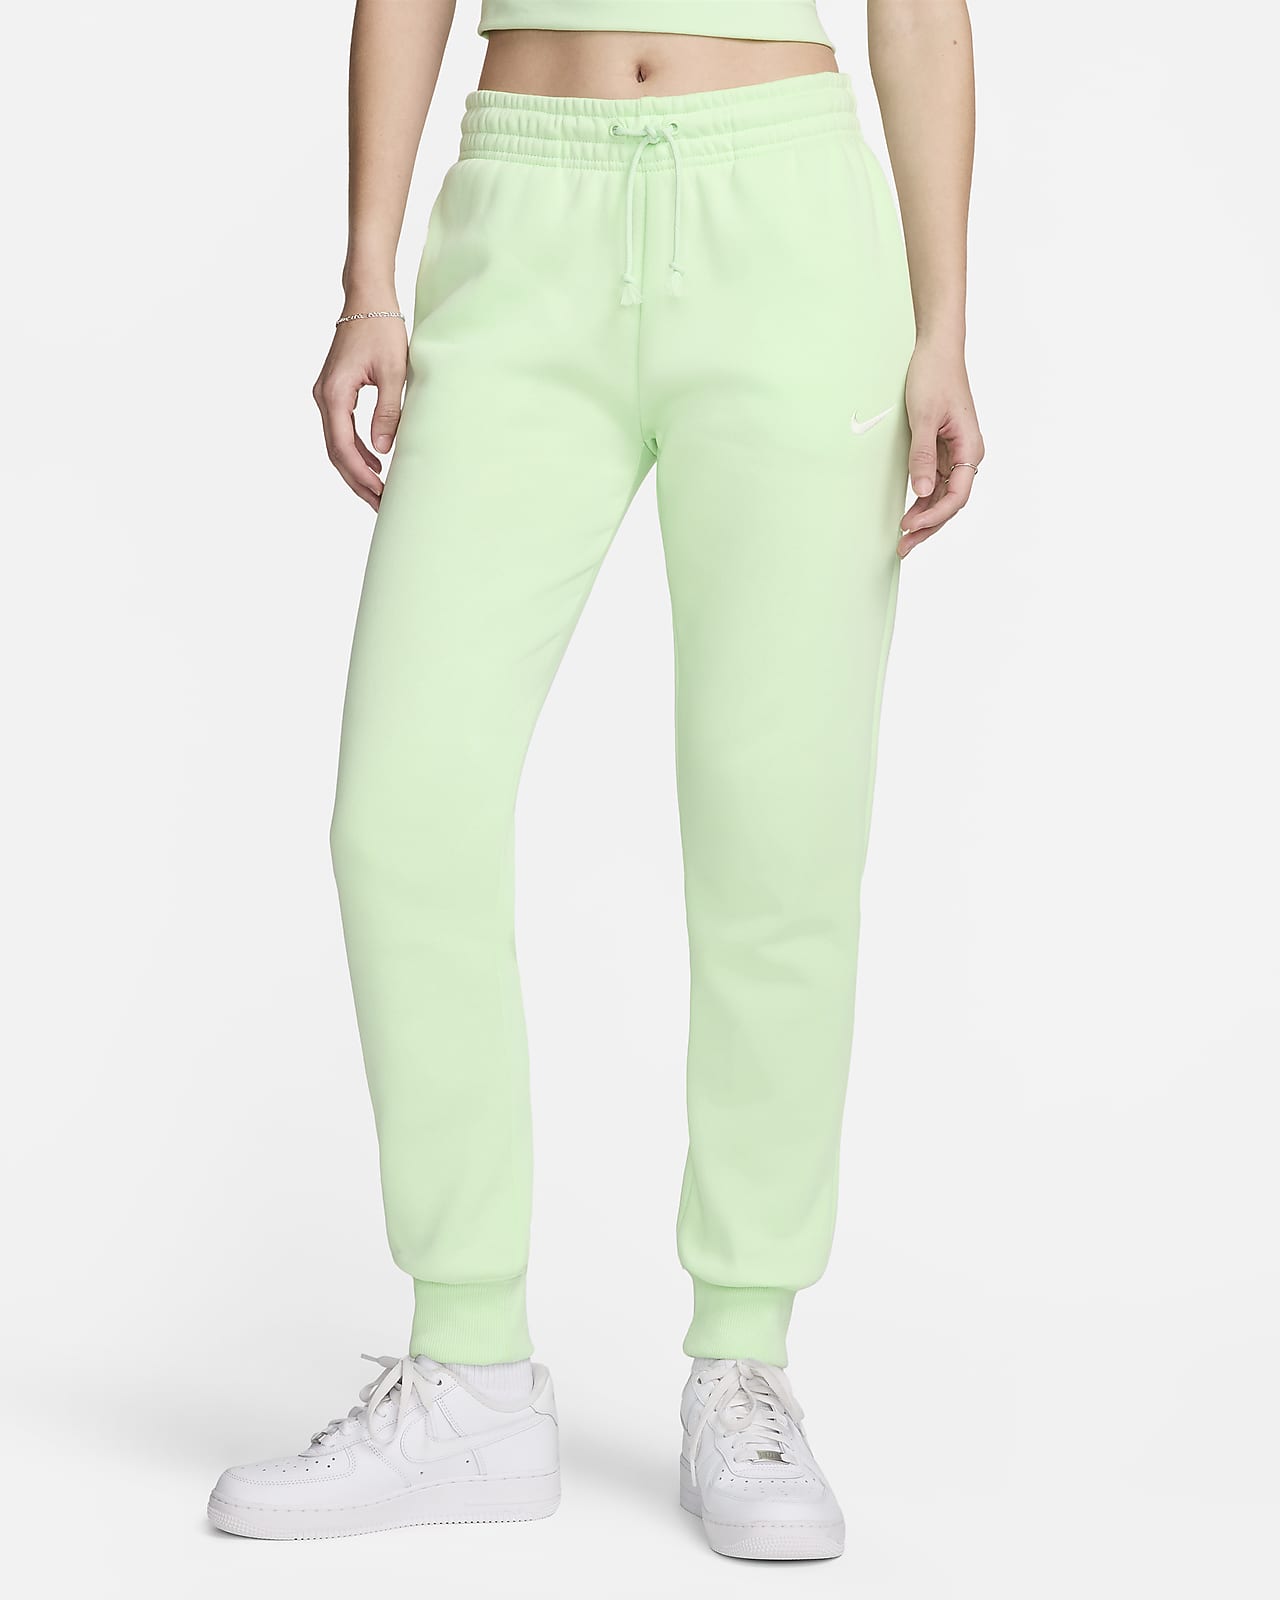 Nike Sportswear Phoenix Fleece joggingbroek met halfhoge taille voor dames